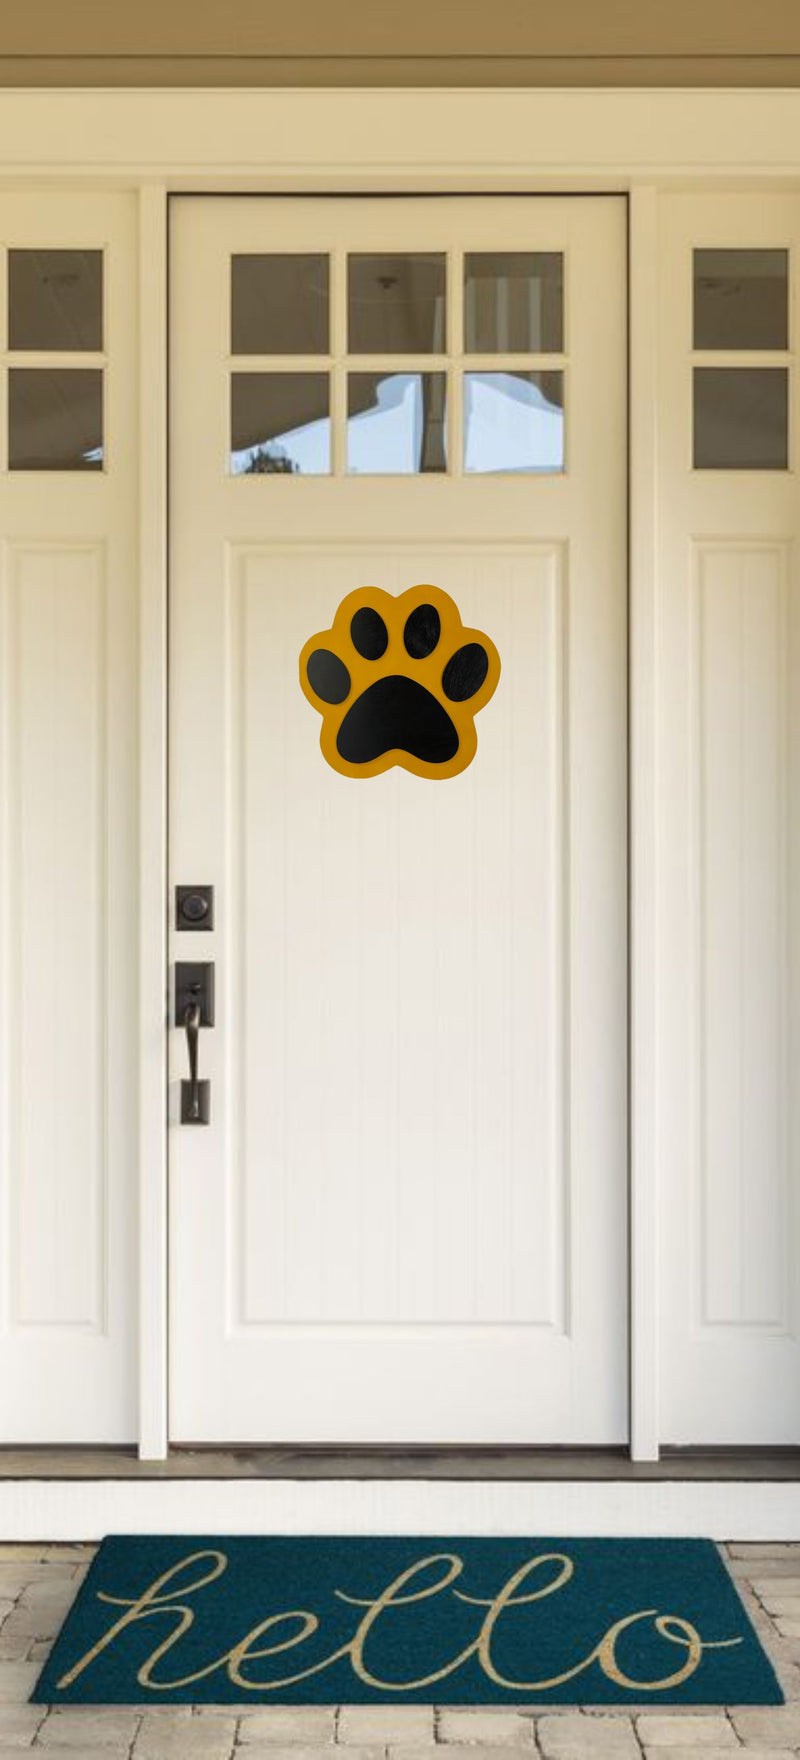 Yellow and Black Wooden Paw Print Door Hanger on a White Front Door.